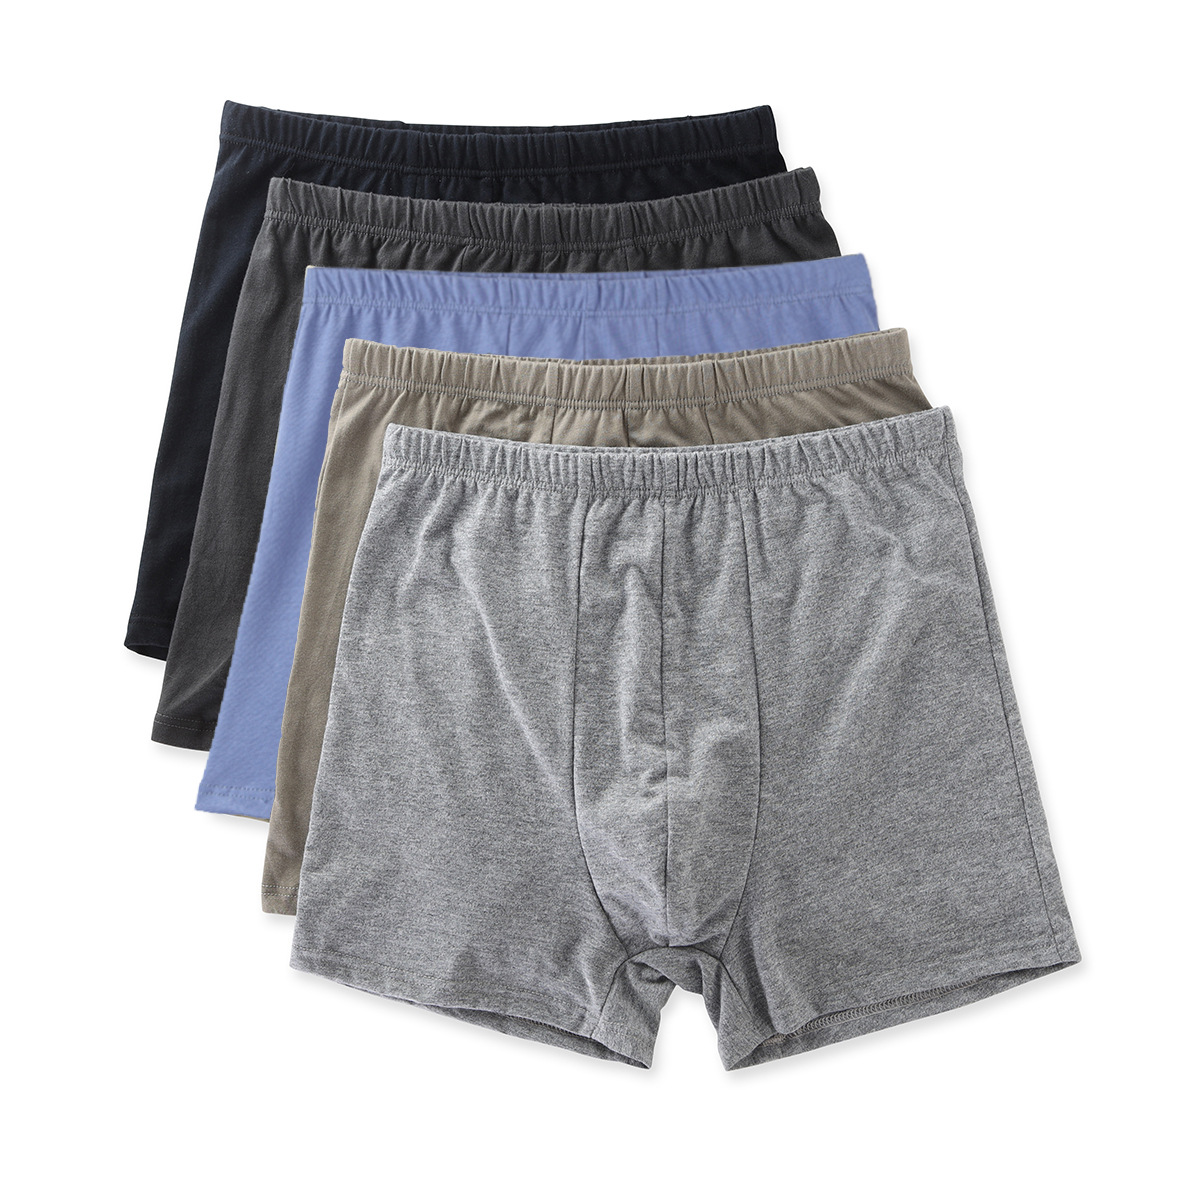 Men's Cotton Boxer Briefs Men's Cotton Shorts Underpants Cotton Youth Mid-Waist Four-Corner Fat Guy Cotton Pants